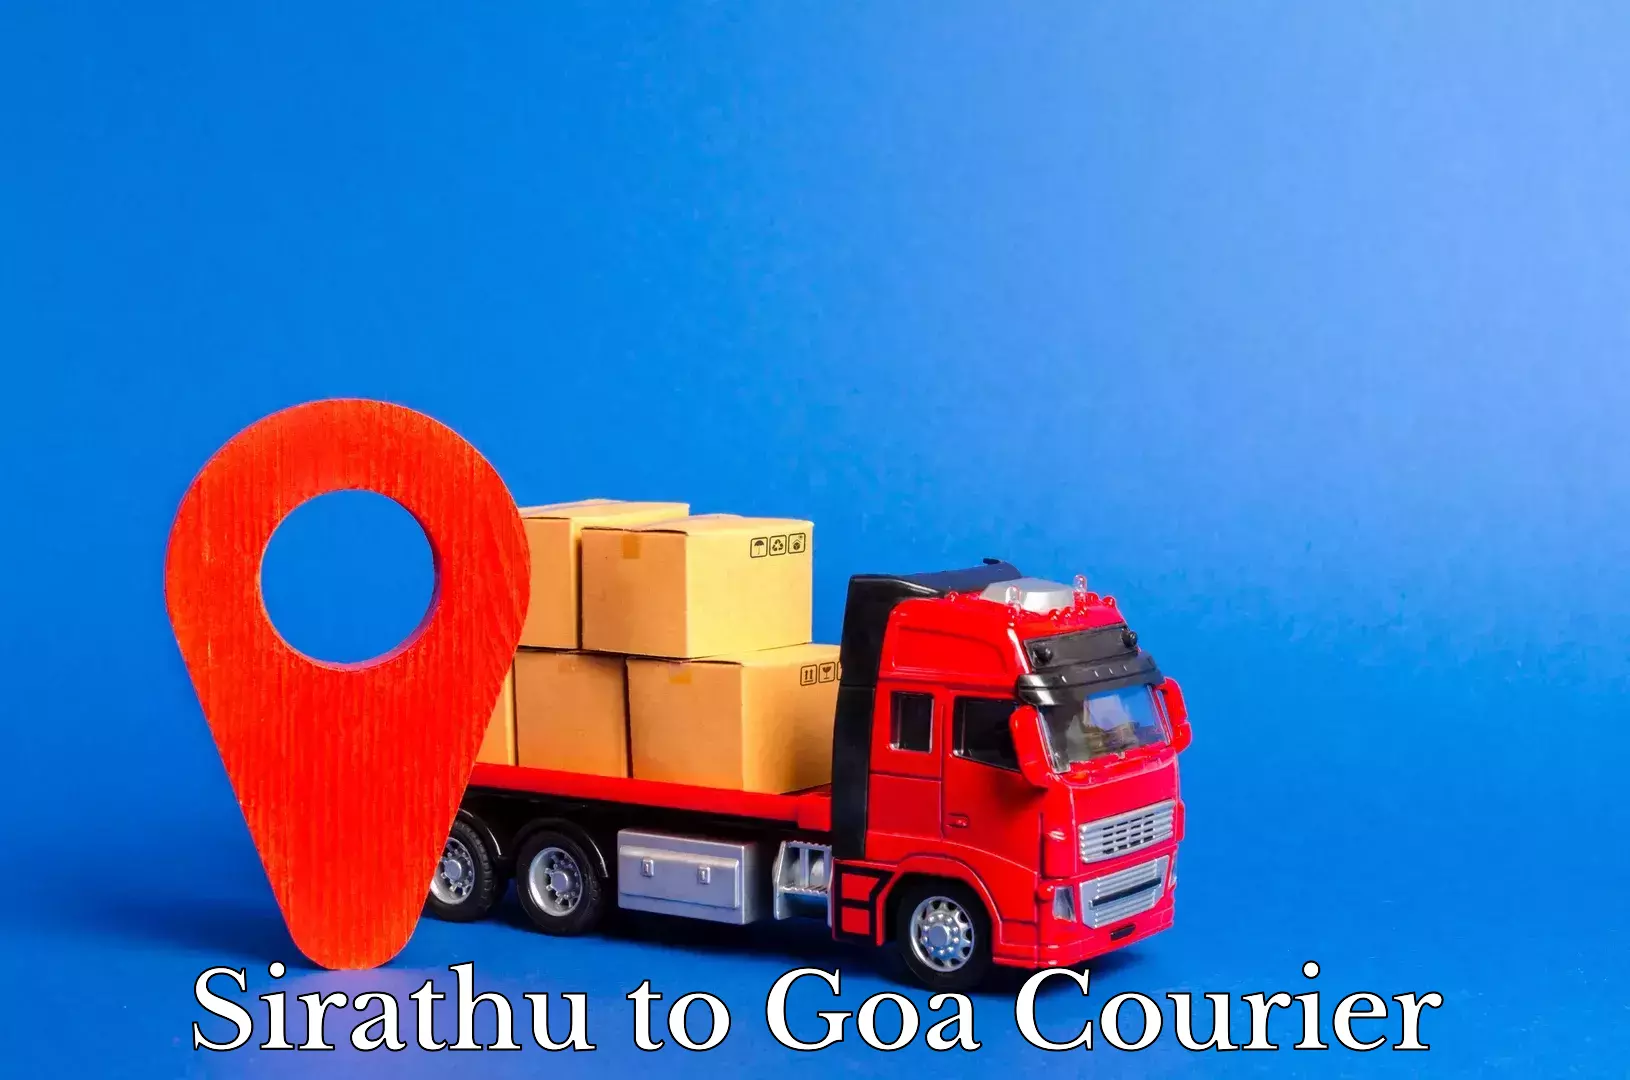 Courier service comparison Sirathu to Goa